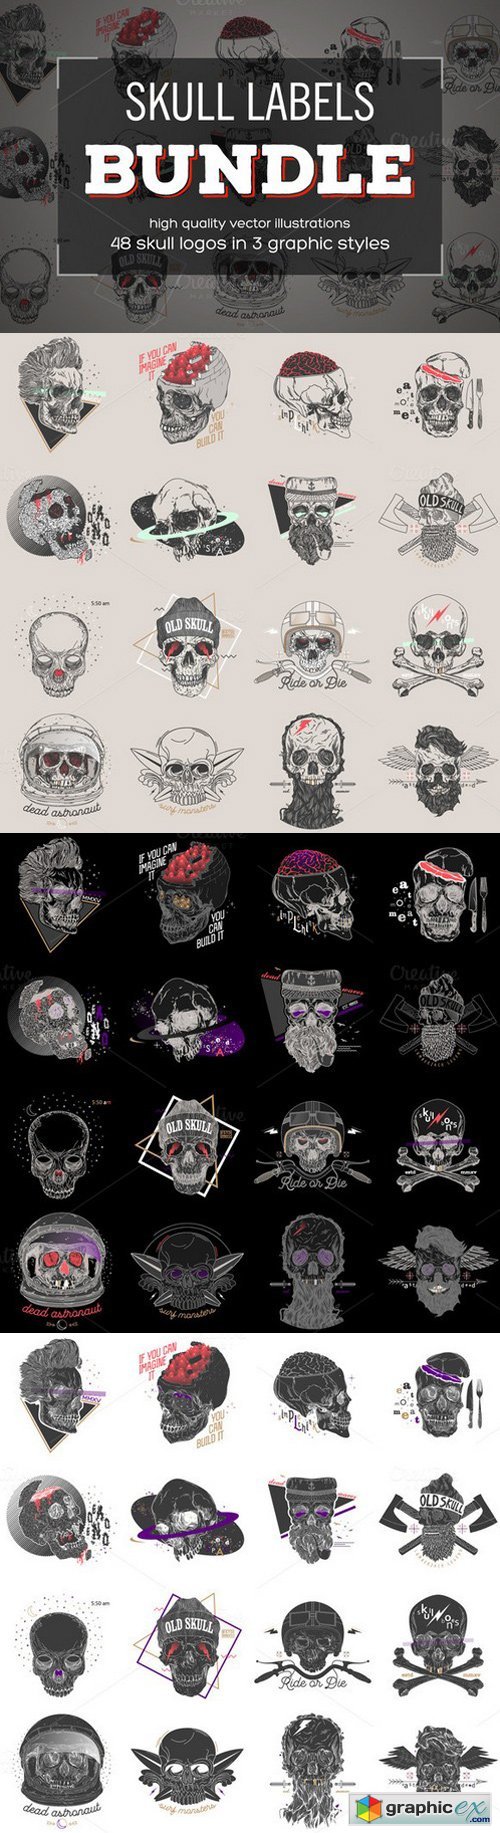 Skull Labels BUNDLE